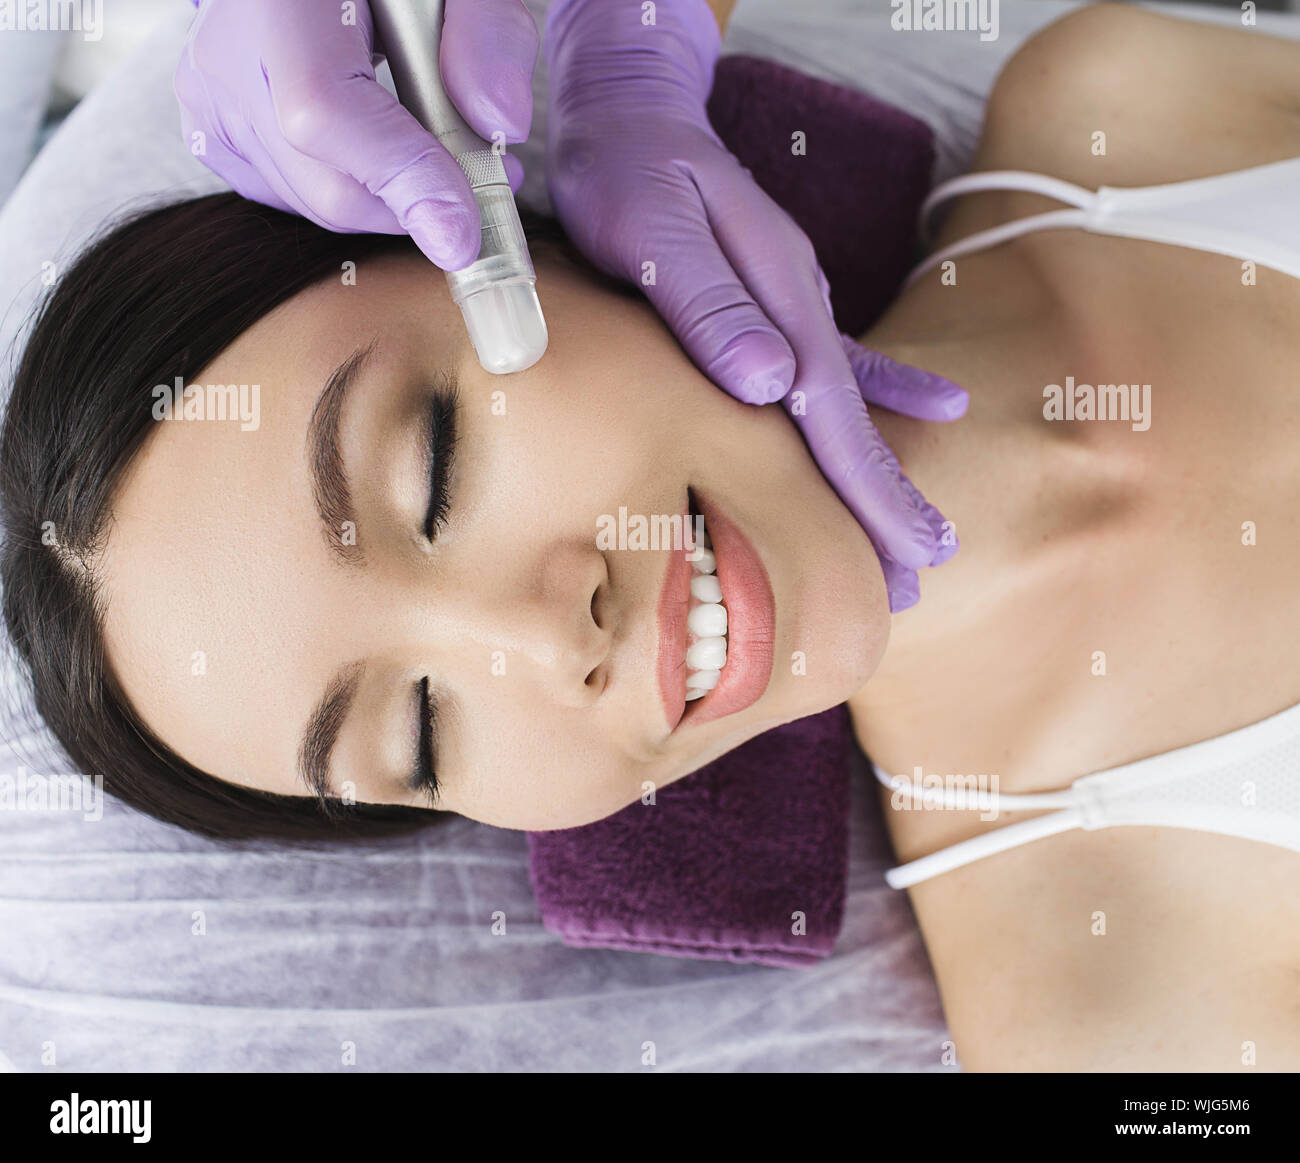 Nette koreanische Frau erhält ein Gesicht peeling Verfahren in einem Schönheitssalon. Hautpflege Stockfoto